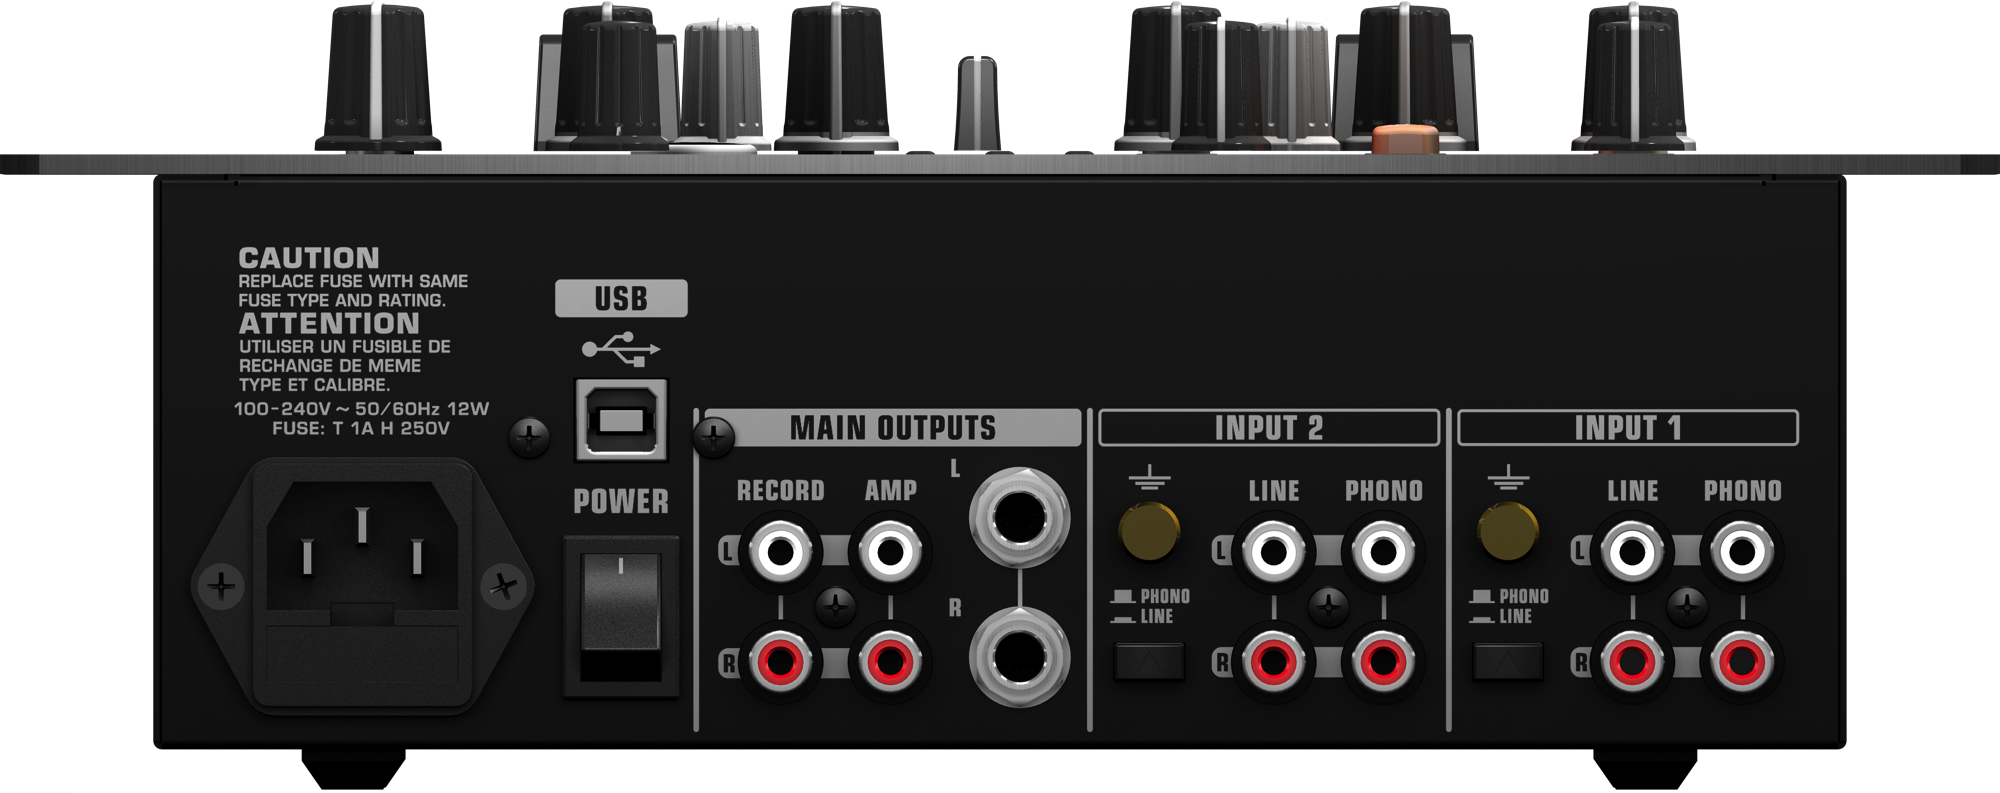 Pro Mixer Nox202 - Mixer Behringer Nox 202 Usb Clipart (2000x793), Png Download